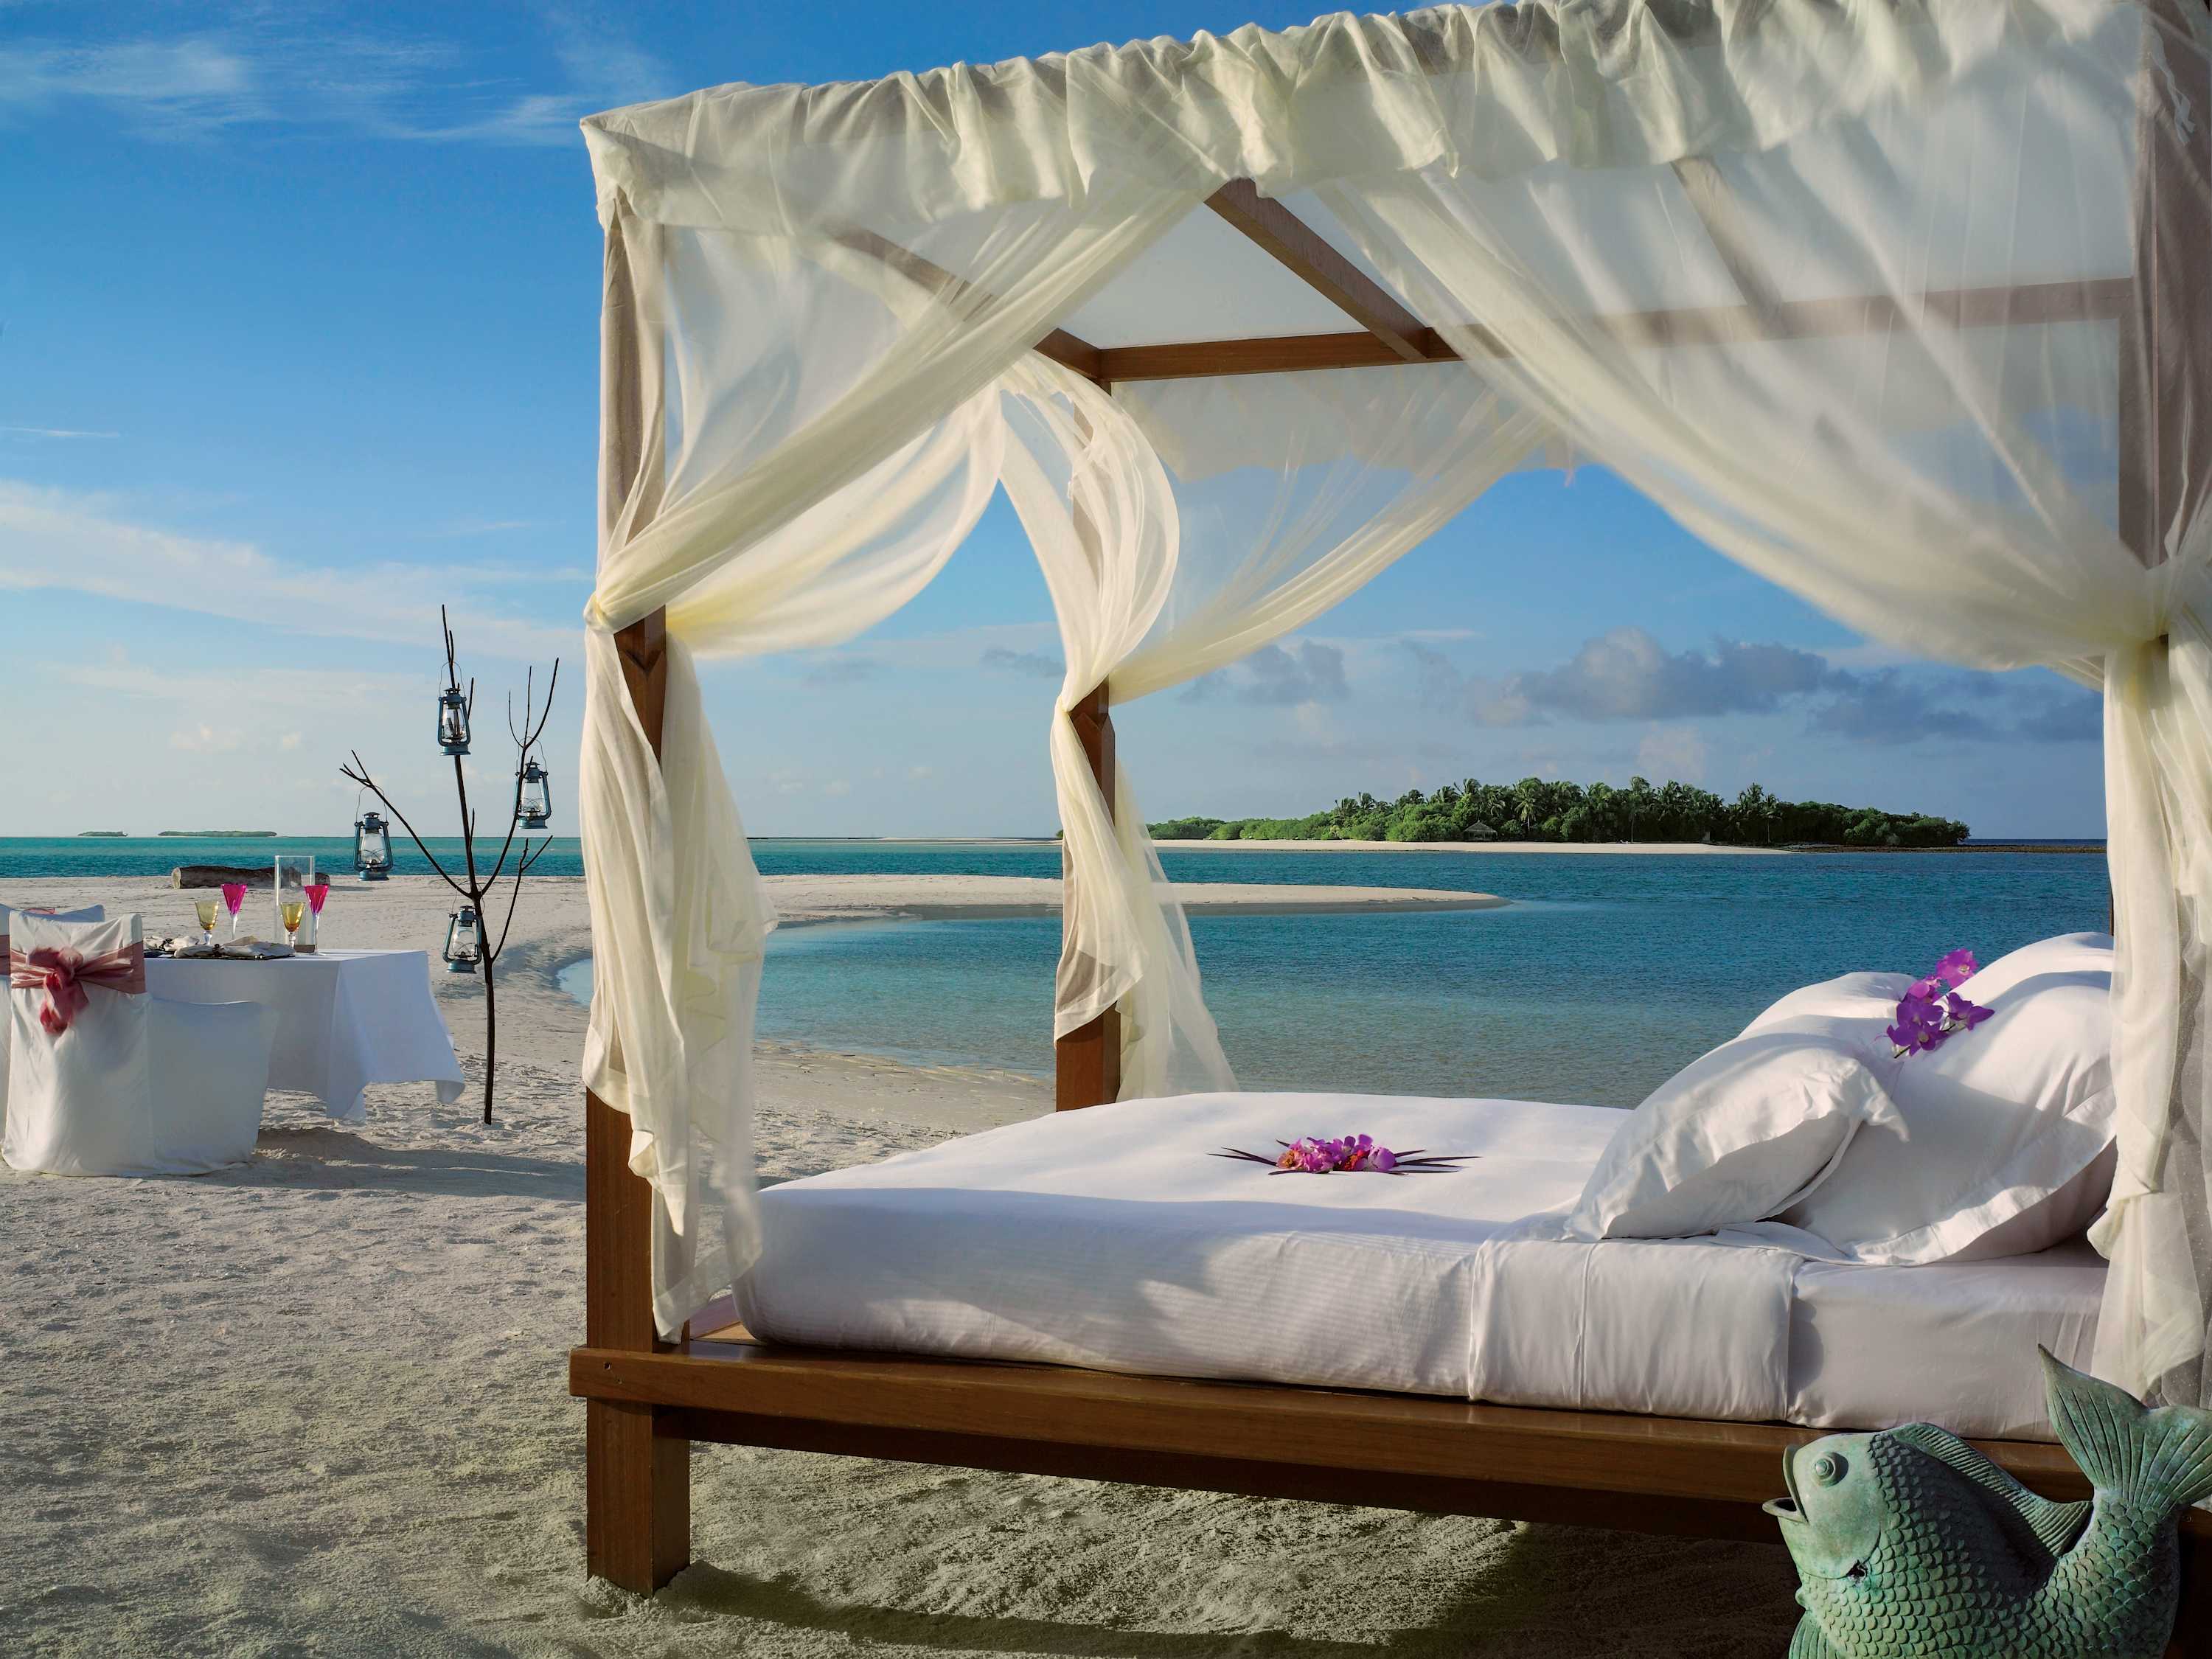 Island beach 2. Мальдивы Резорт. Шикарный вид на море. Шикарные места отдыха. Красивый вид на пляж.